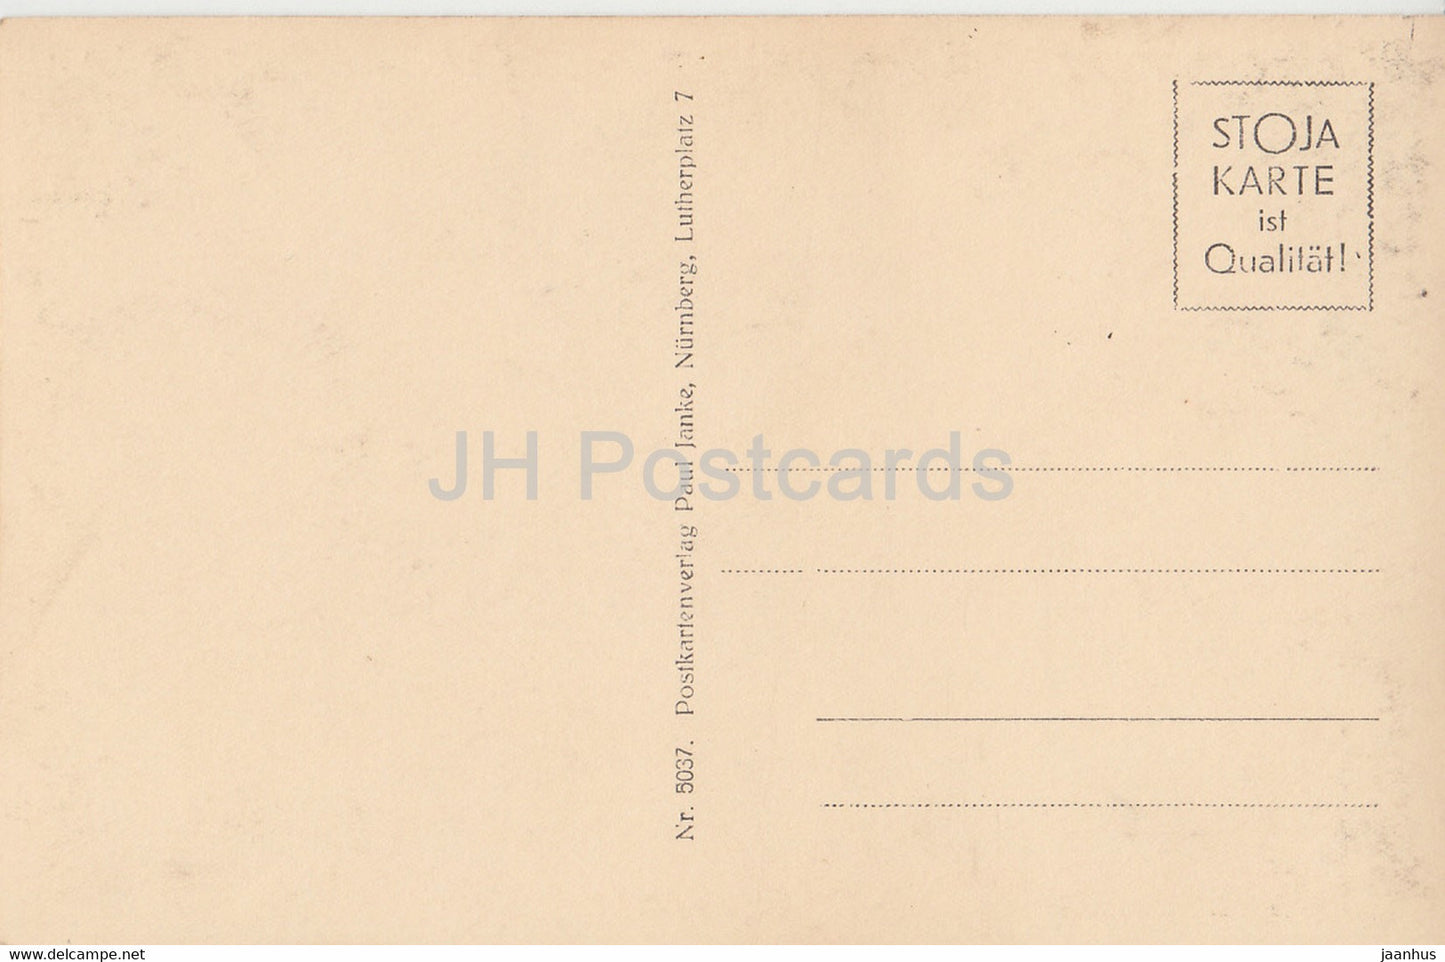 Nurnberg - An der Pagnitz - old postcard - Germany - unused